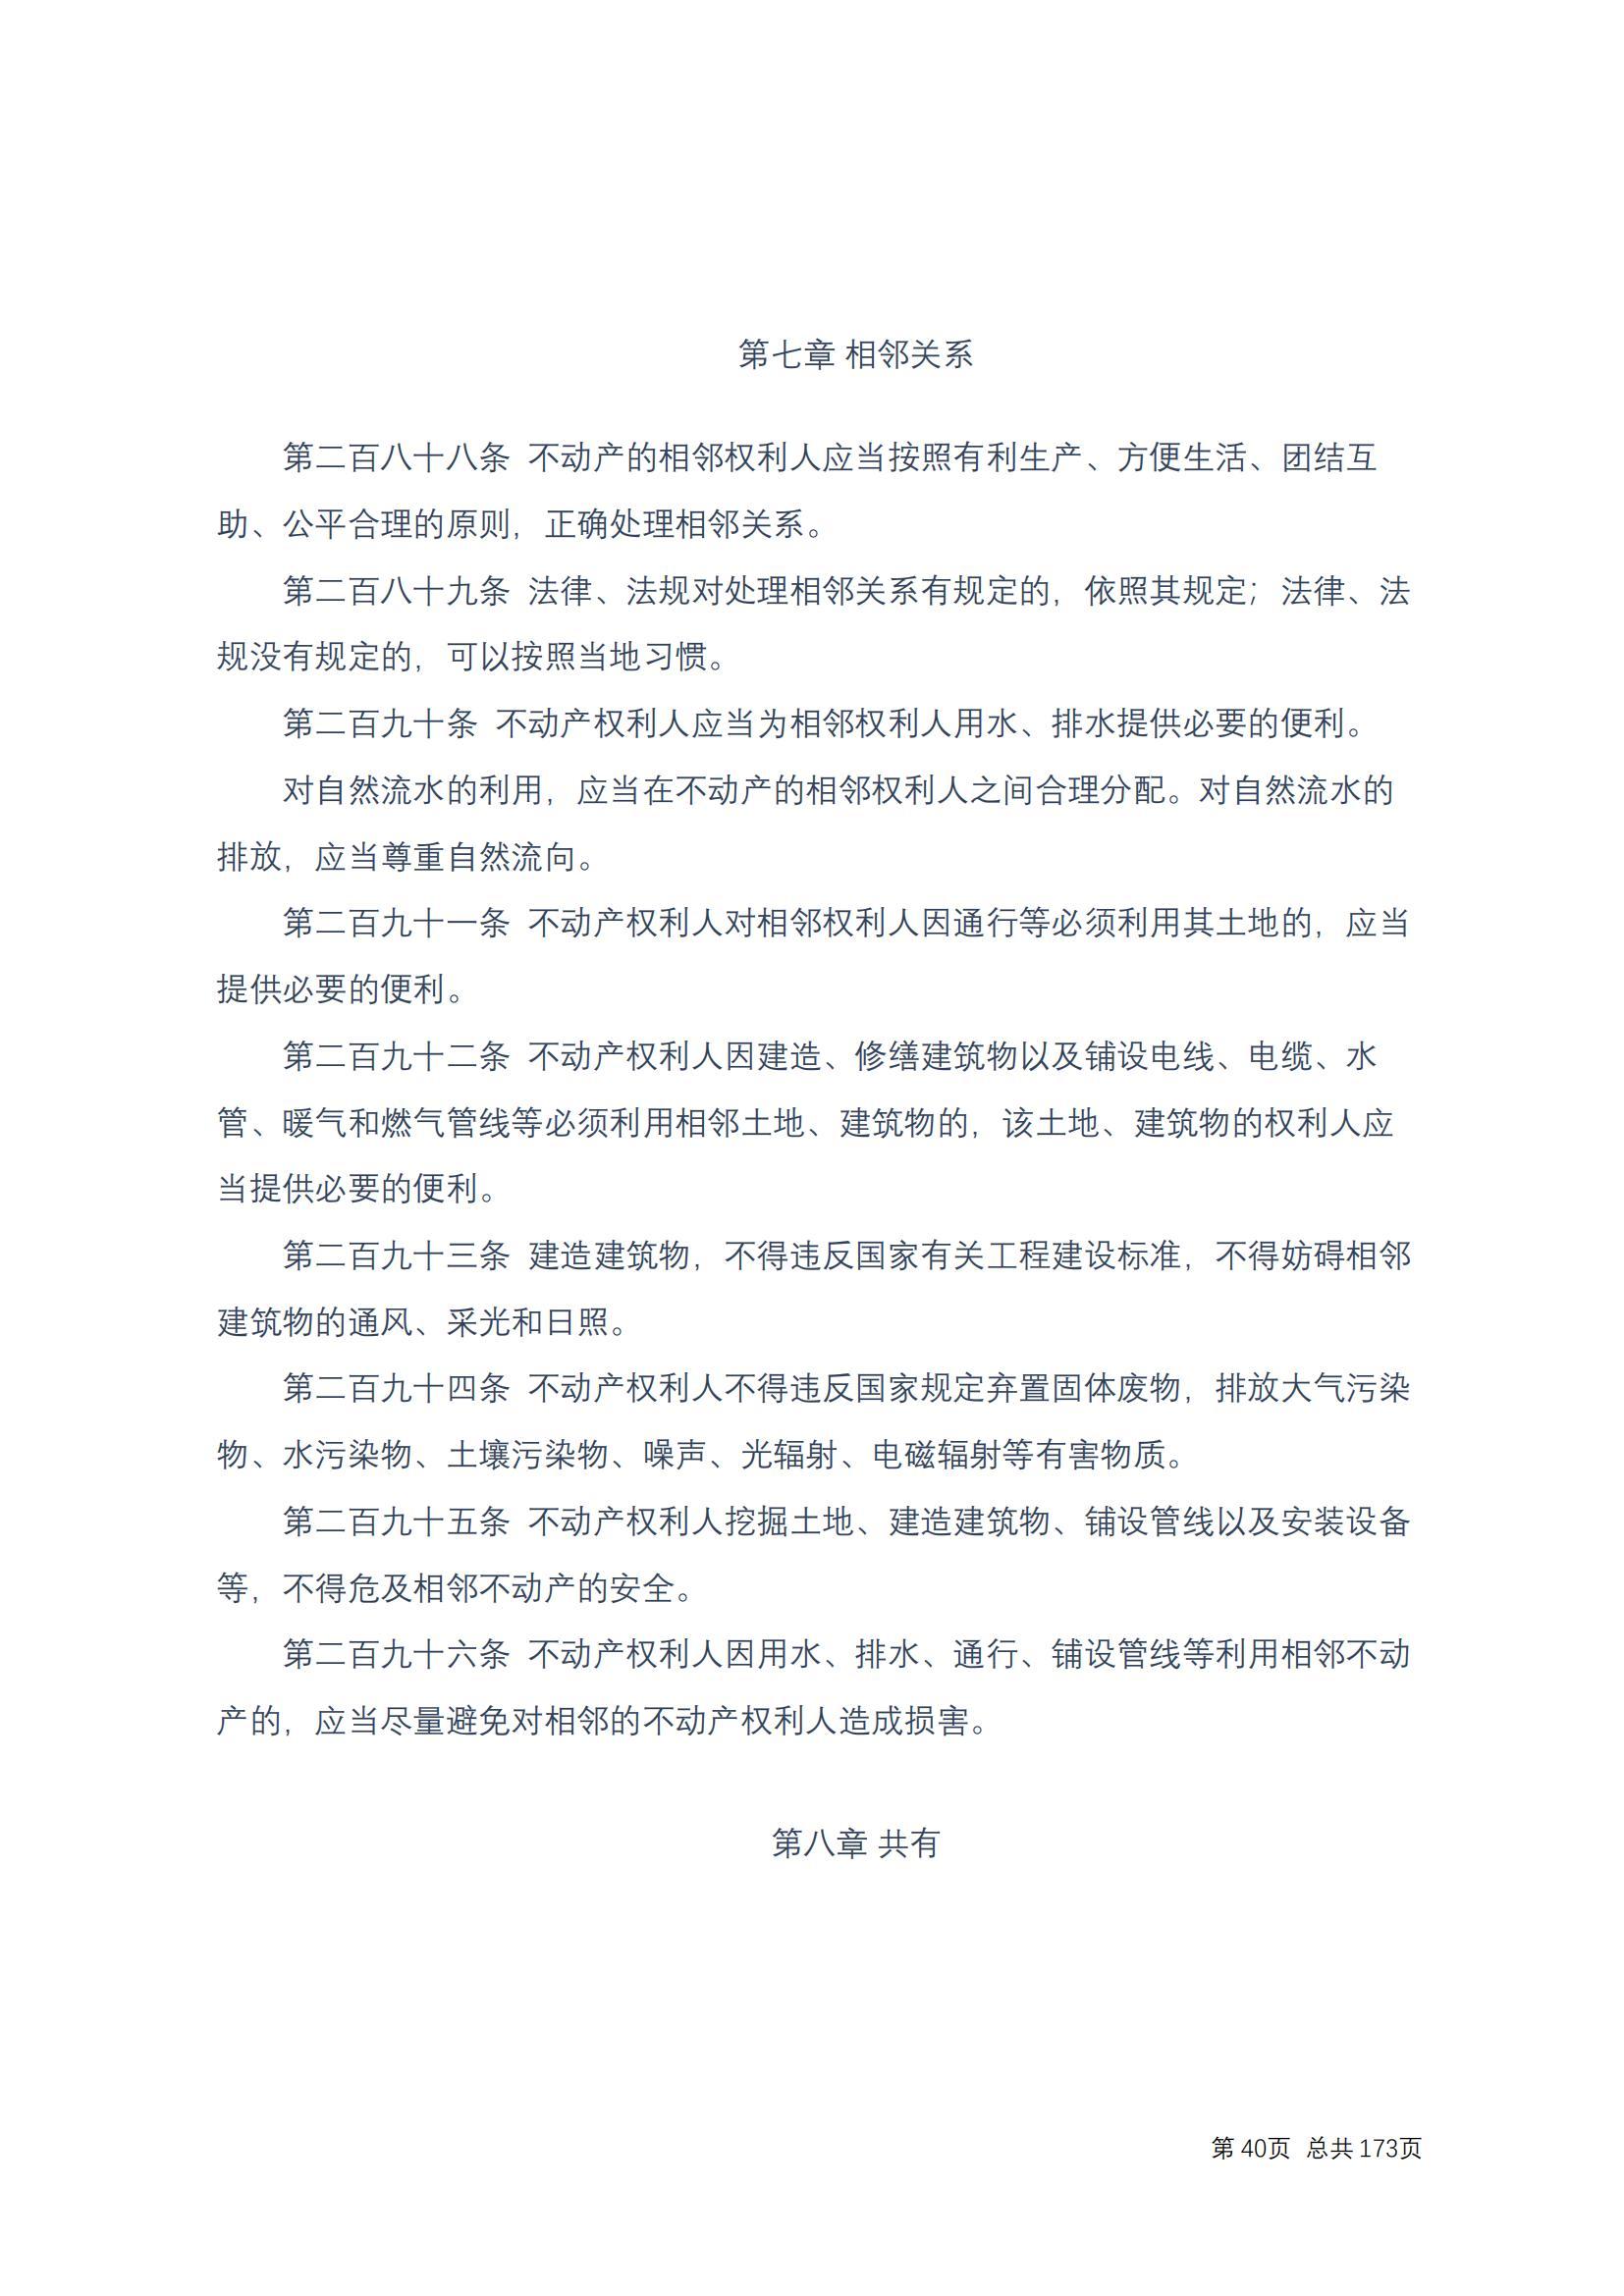 中华人民共和国民法典 修改过_39